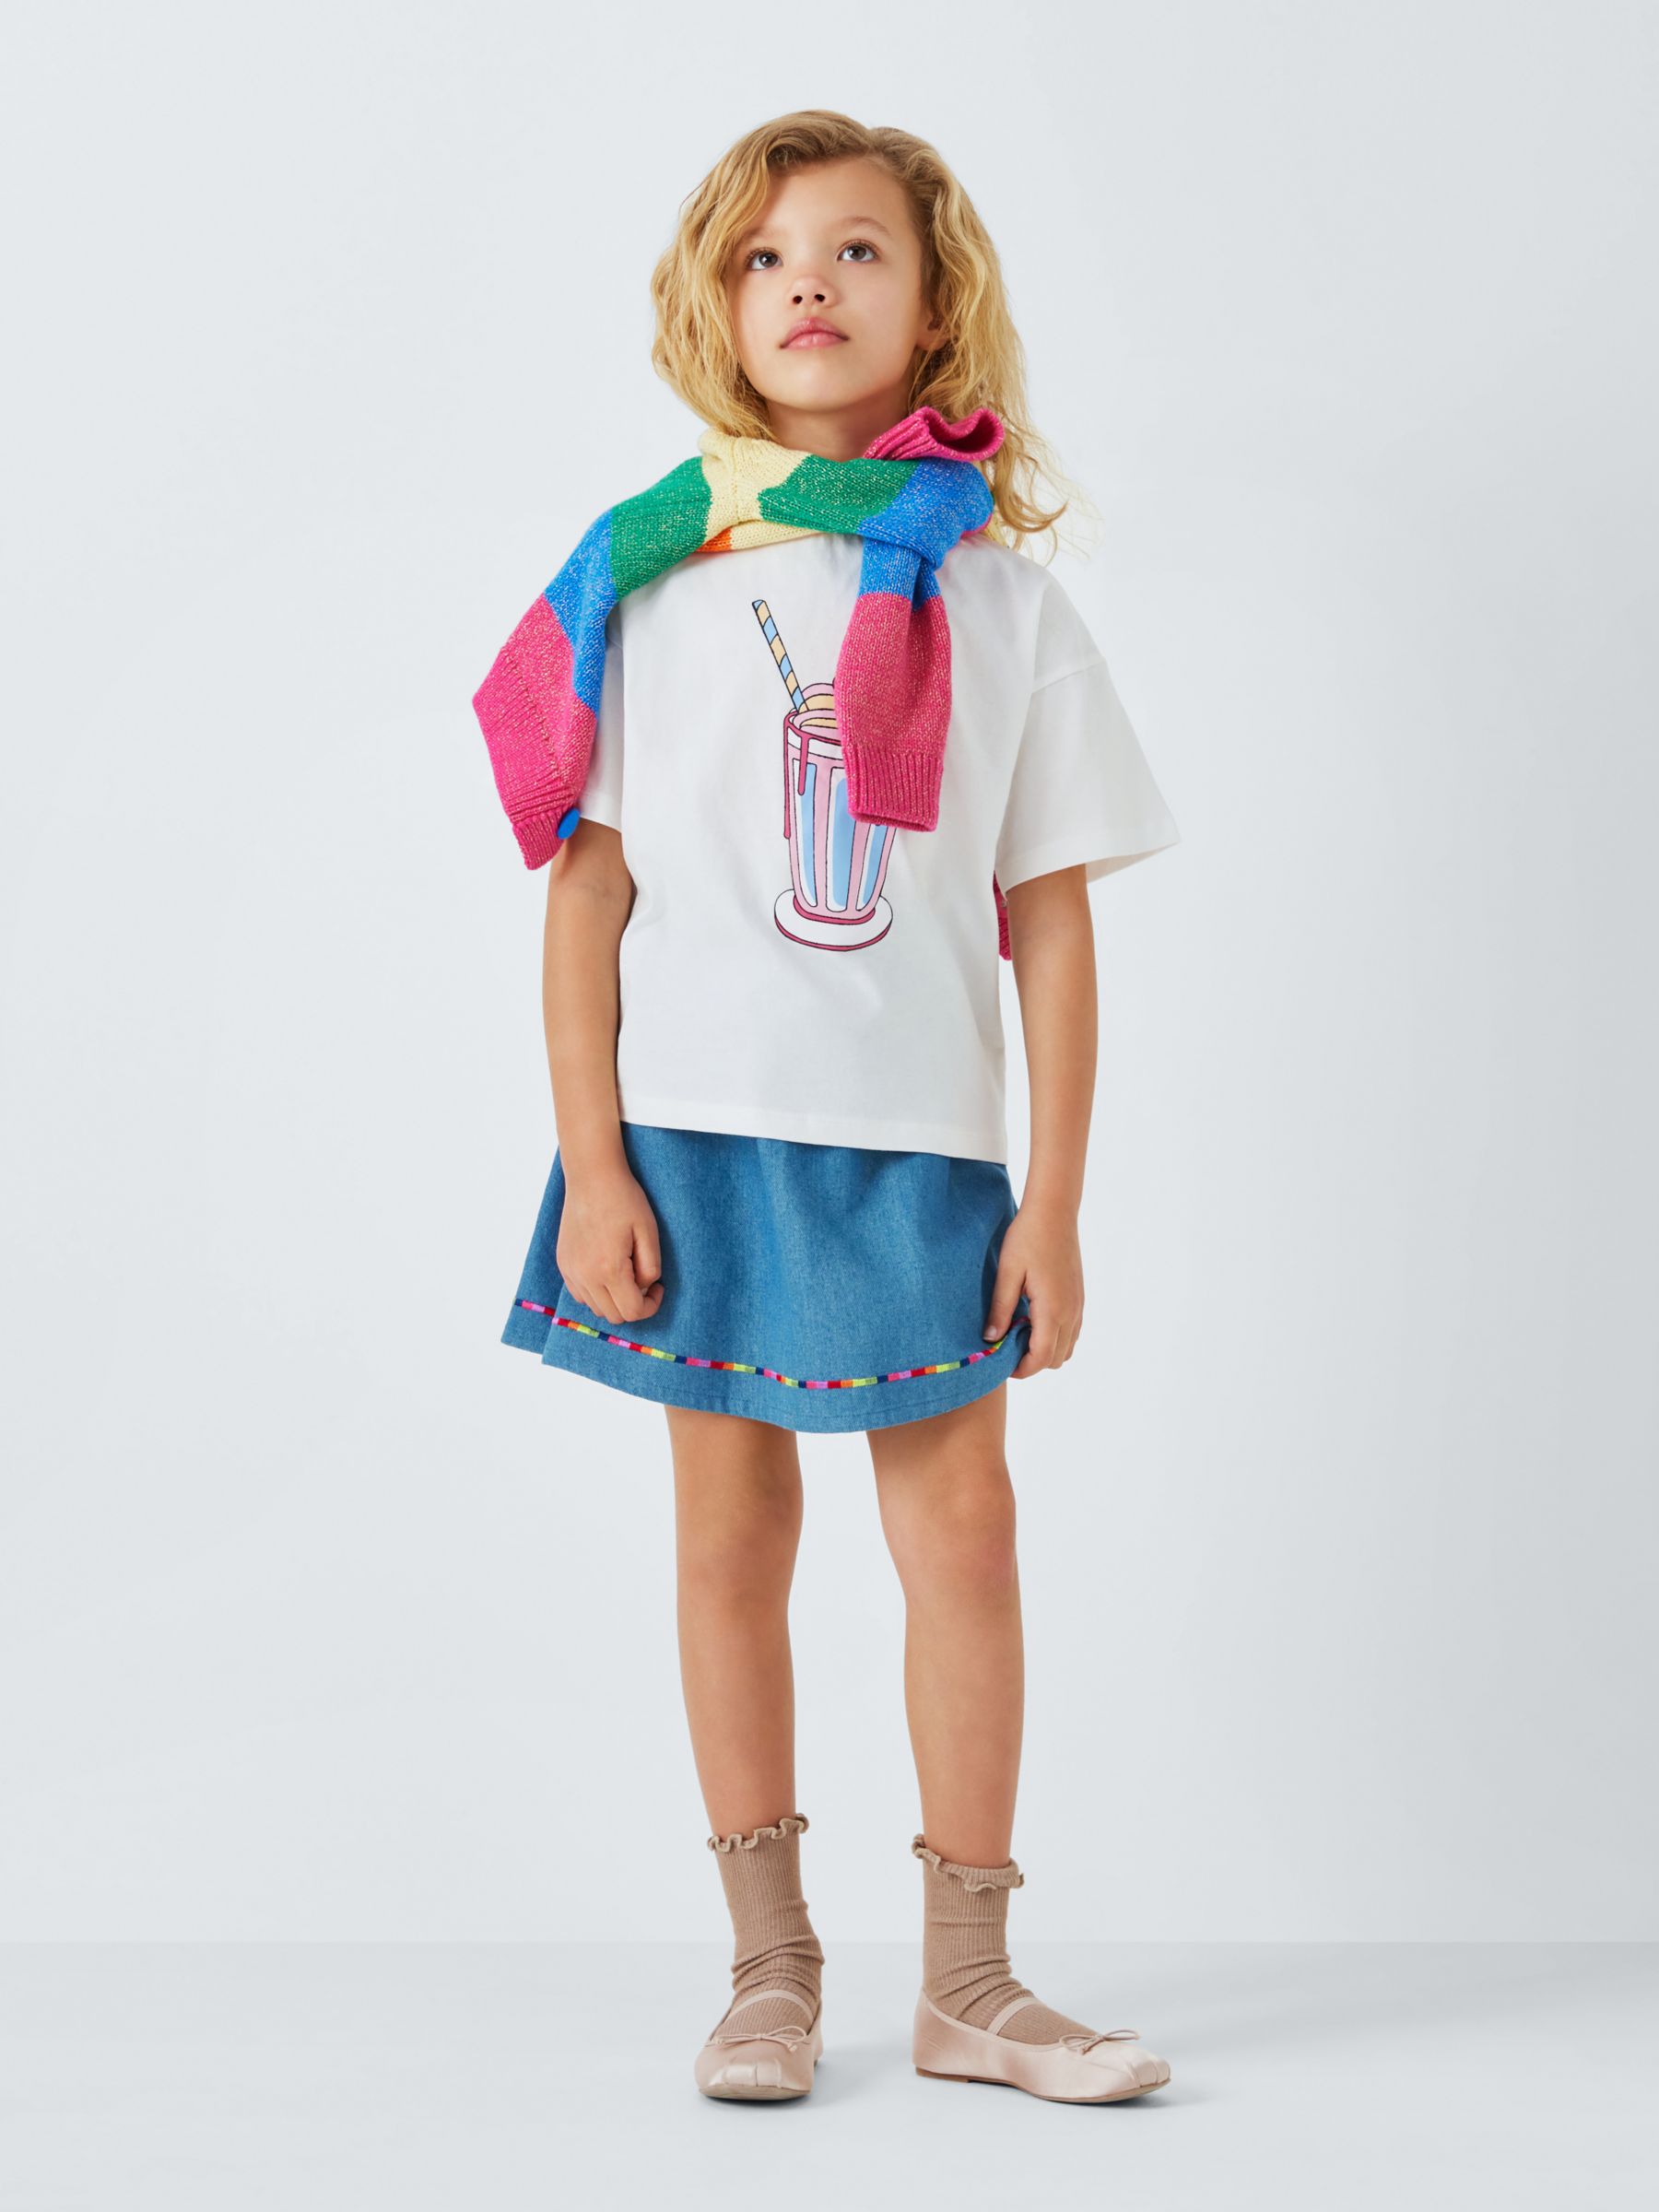 Olivia Rubin Kids' Milkshake Graphic T-Shirt, White/Multi, 4-5 years